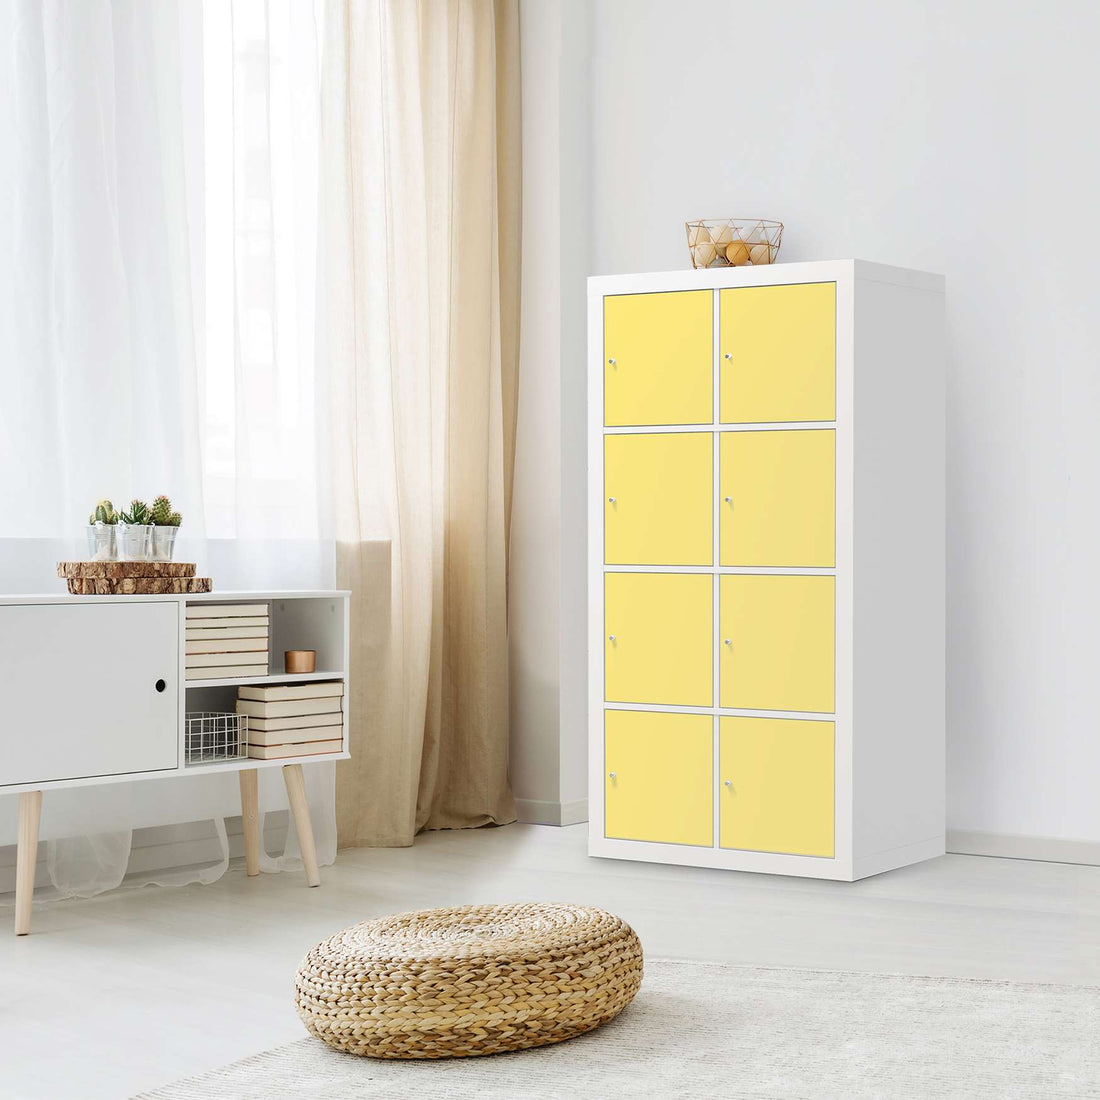 Folie für Möbel Gelb Light - IKEA Kallax Regal 8 Türen - Wohnzimmer